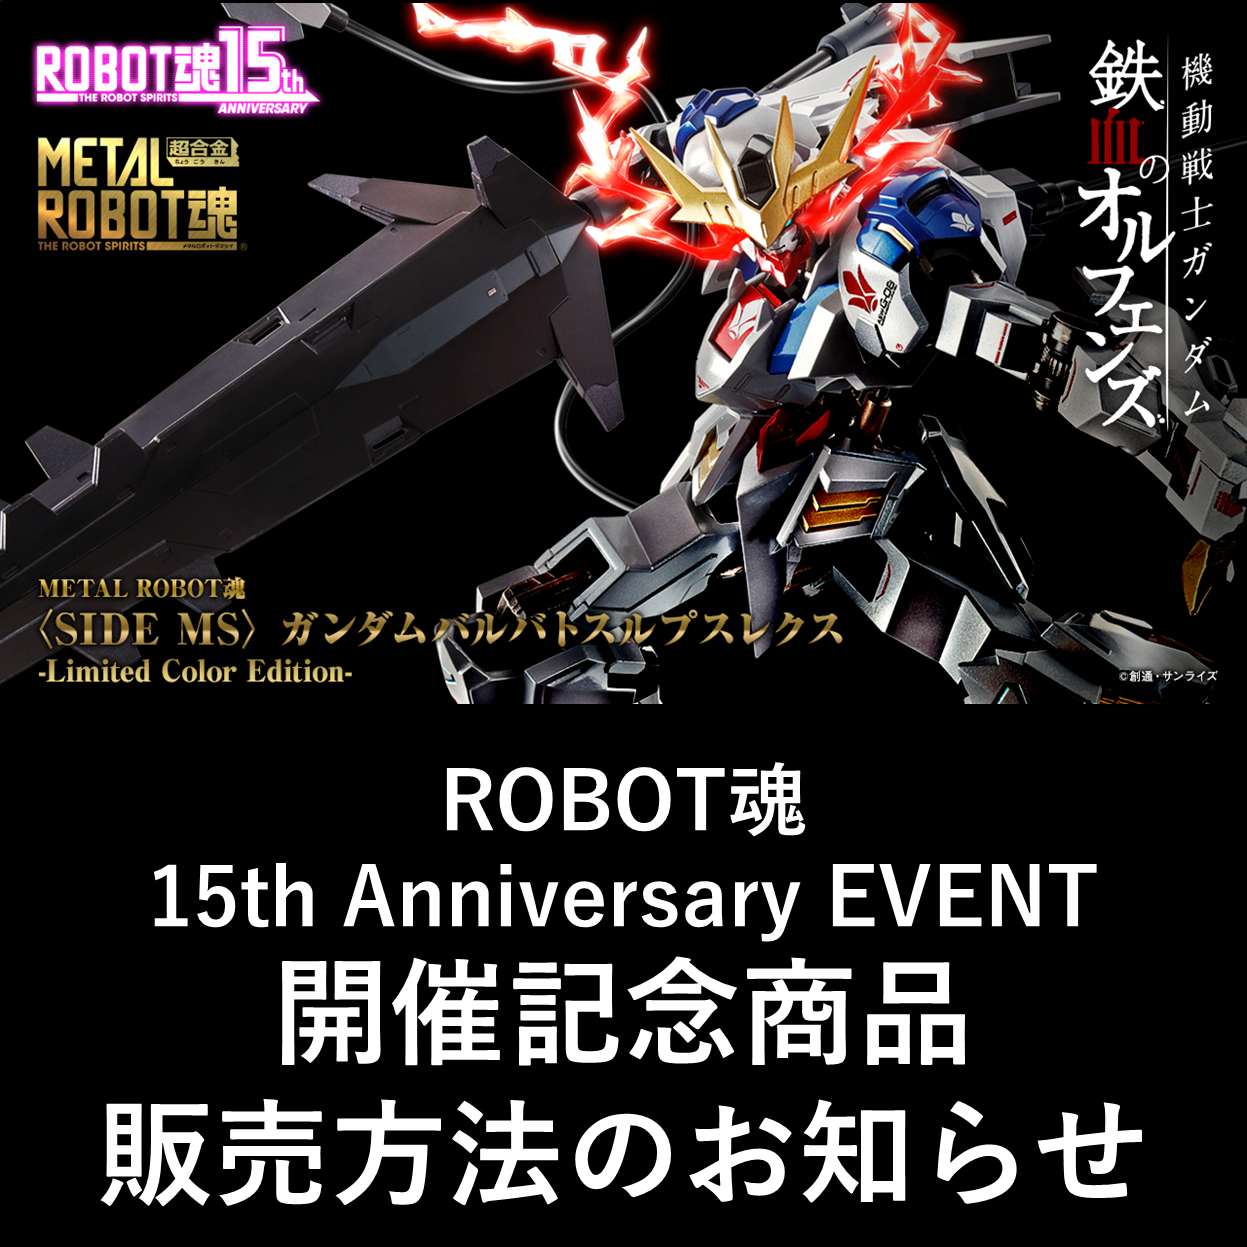 【魂ストア】ROBOT魂 15th Anniversary EVENT　開催記念商品販売方法公開のお知らせ